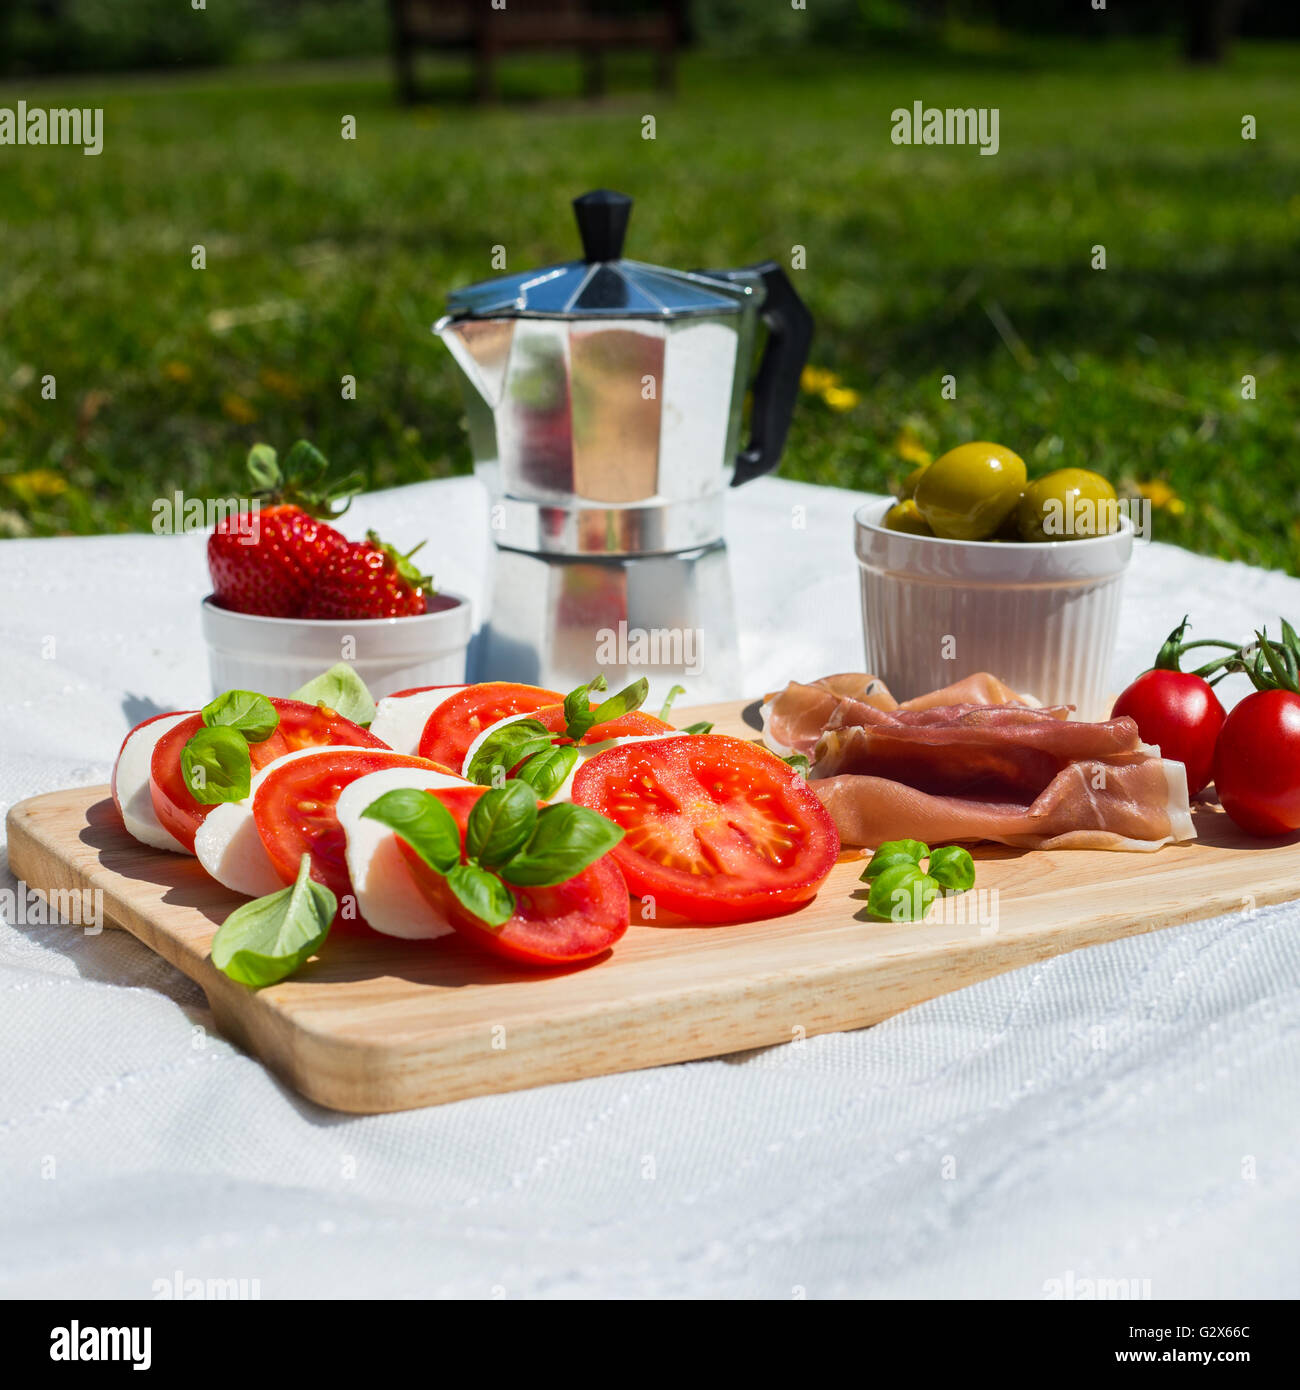 A picnic of tomato and mozzarella salad, parma ham, strawberries, olives and espresso pot in a park Stock Photo